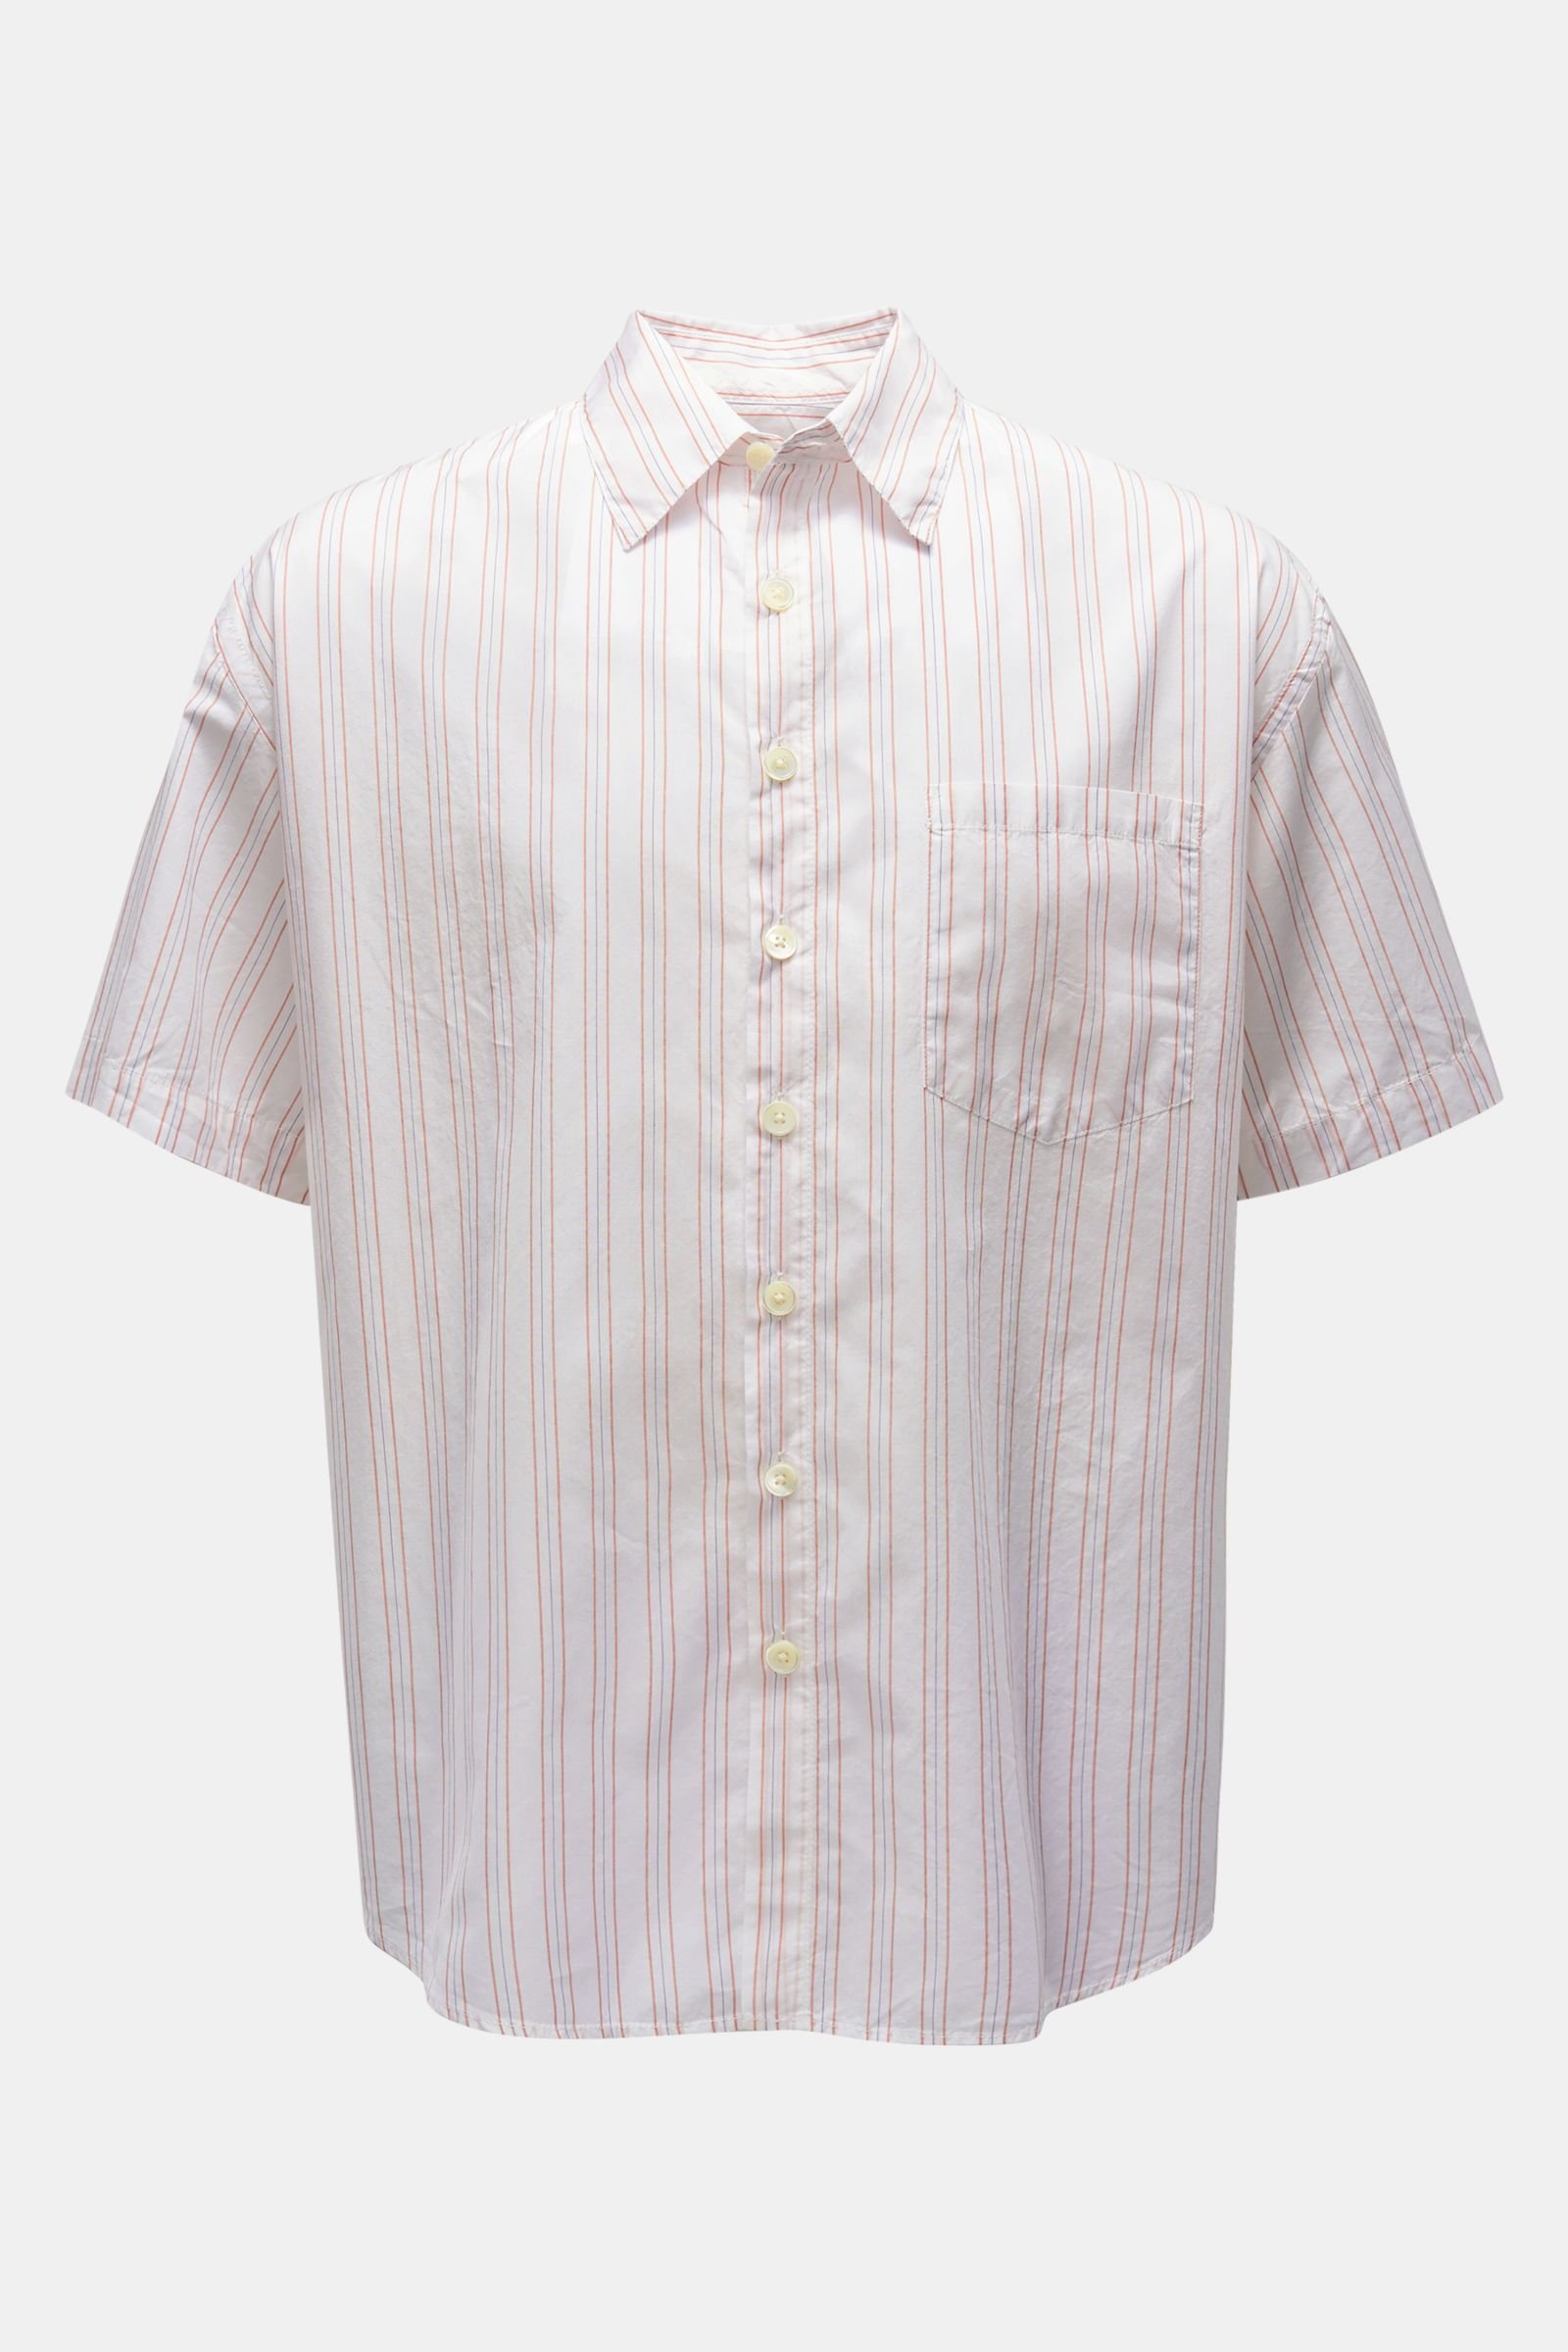 Short-sleeved shirt Kent collar white/light red/navy striped